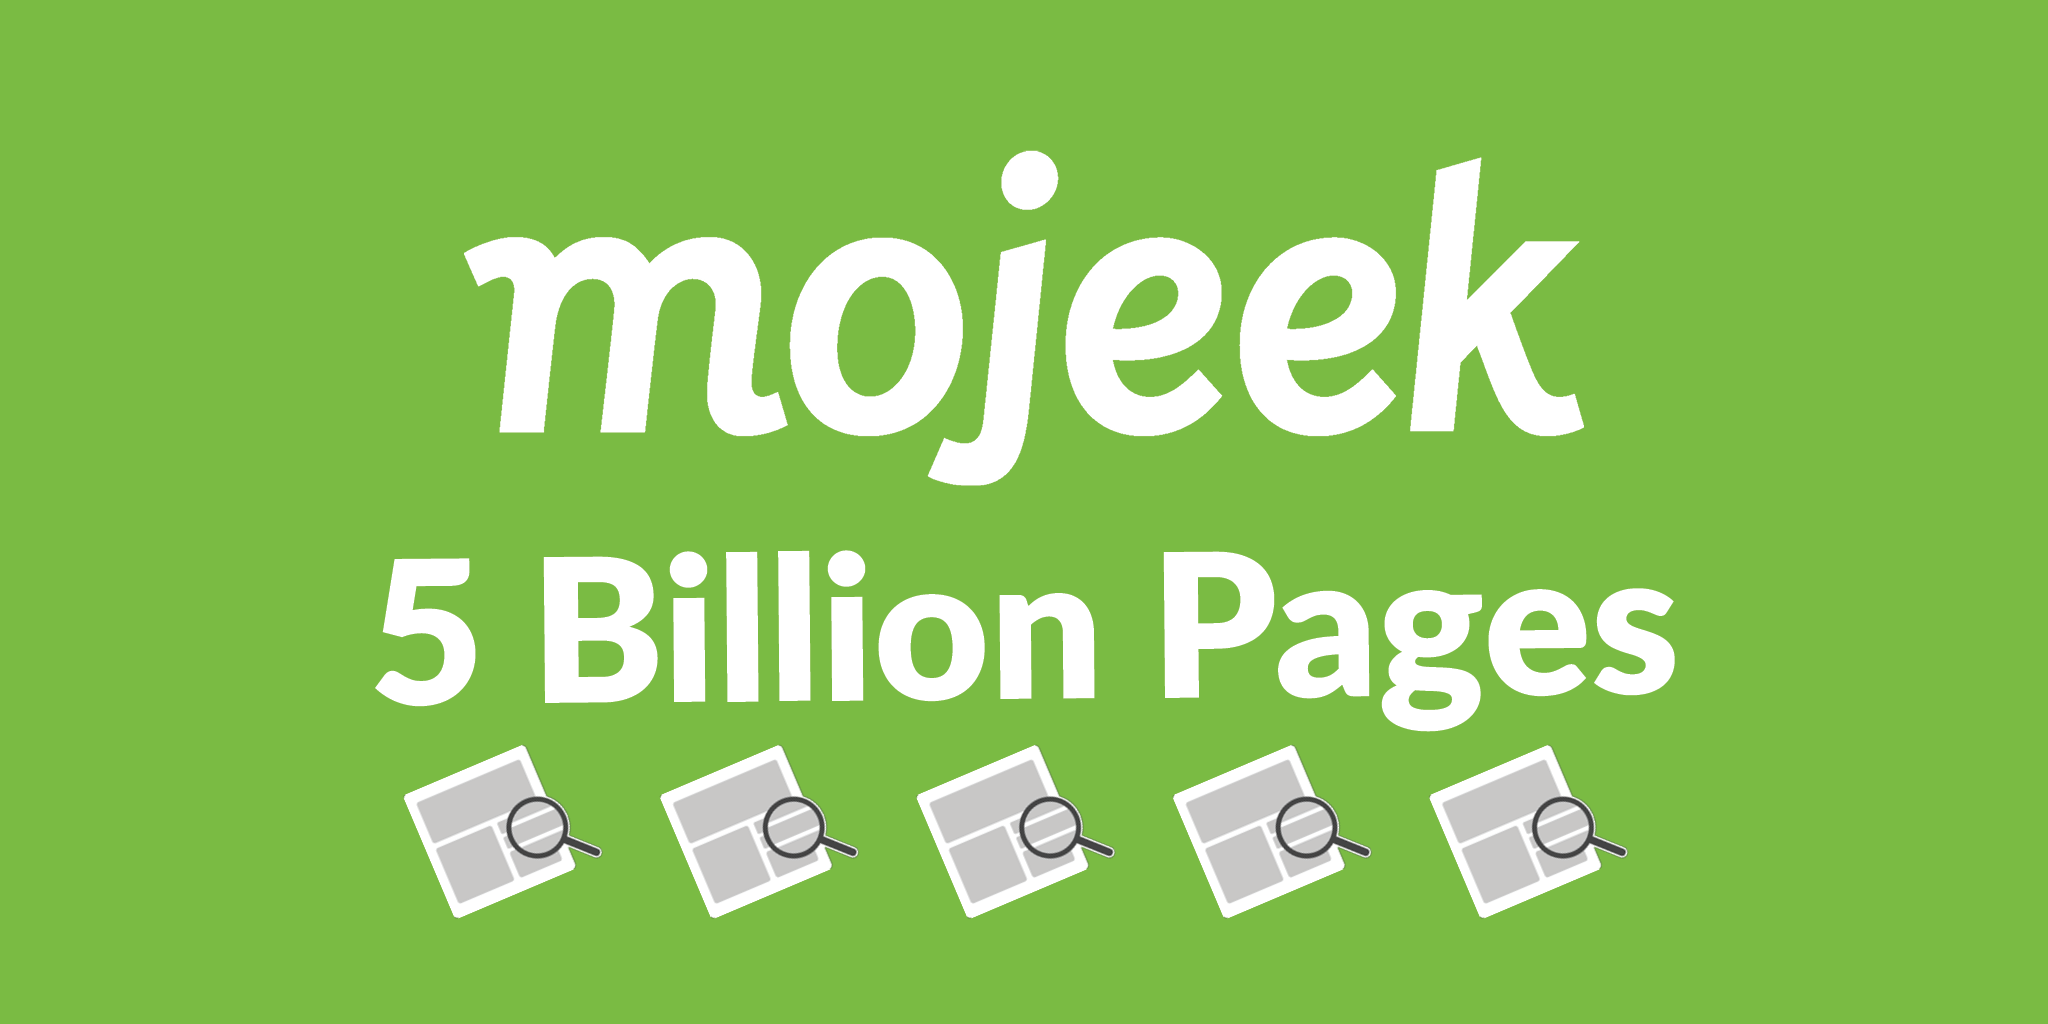 5 billion pages